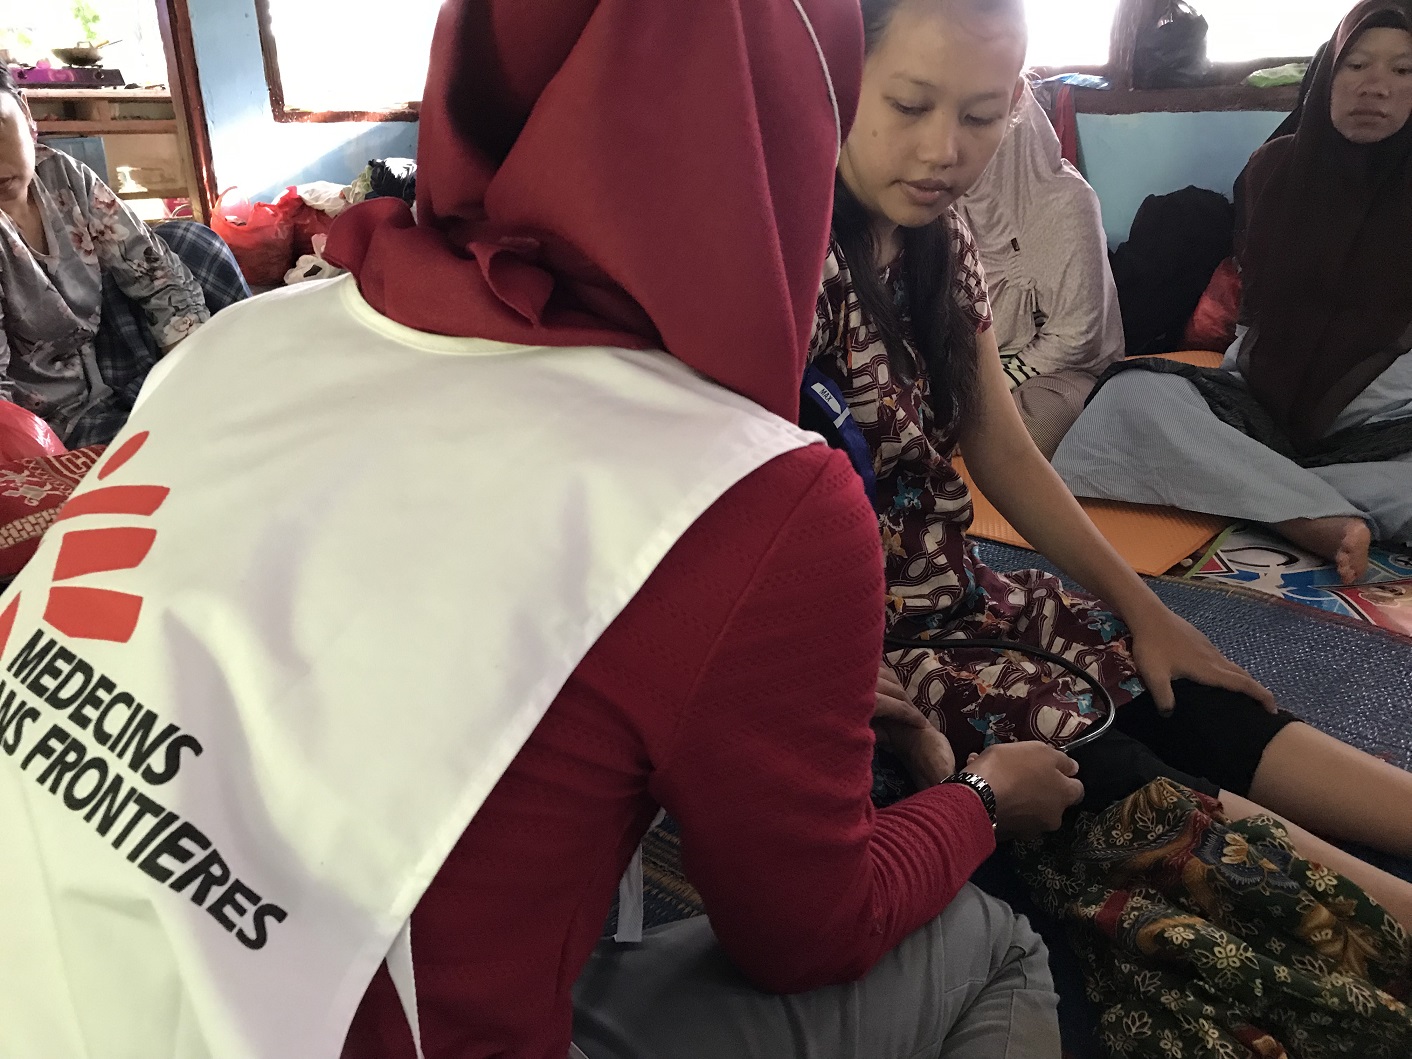 카리타 보건소의 연락을 받고 이재민 쉼터를 방문한 국경없는의사회 조산사가 임산부의 상태를 살펴보고 있다. ⓒCici Riesmasari/MSF